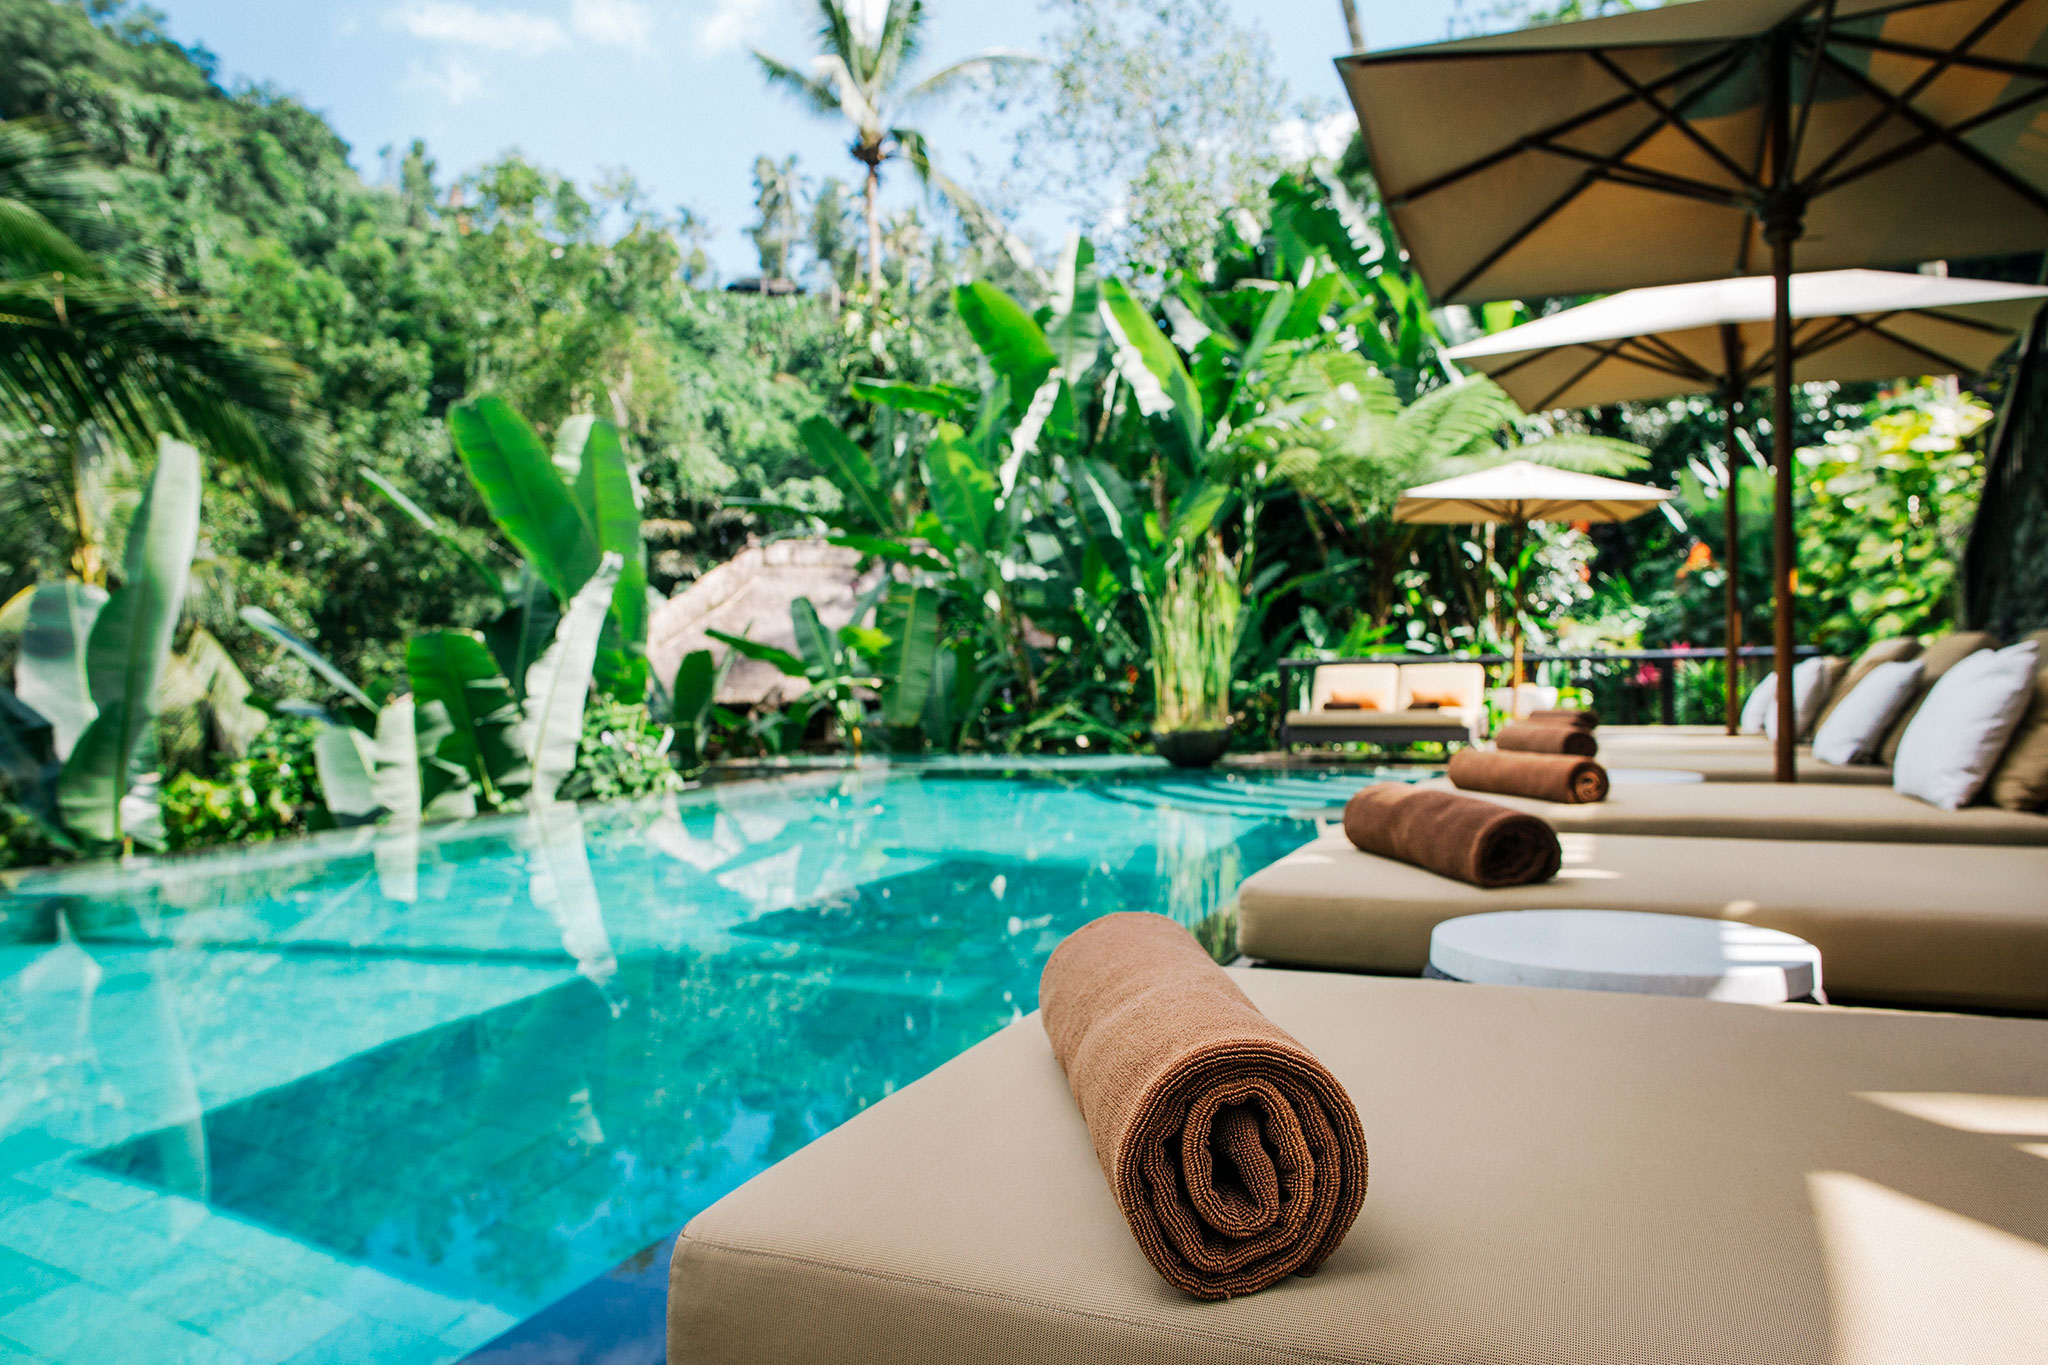 Junto a una piscina tropical, toallas limpias en reposeras esperan a sus huéspedes.